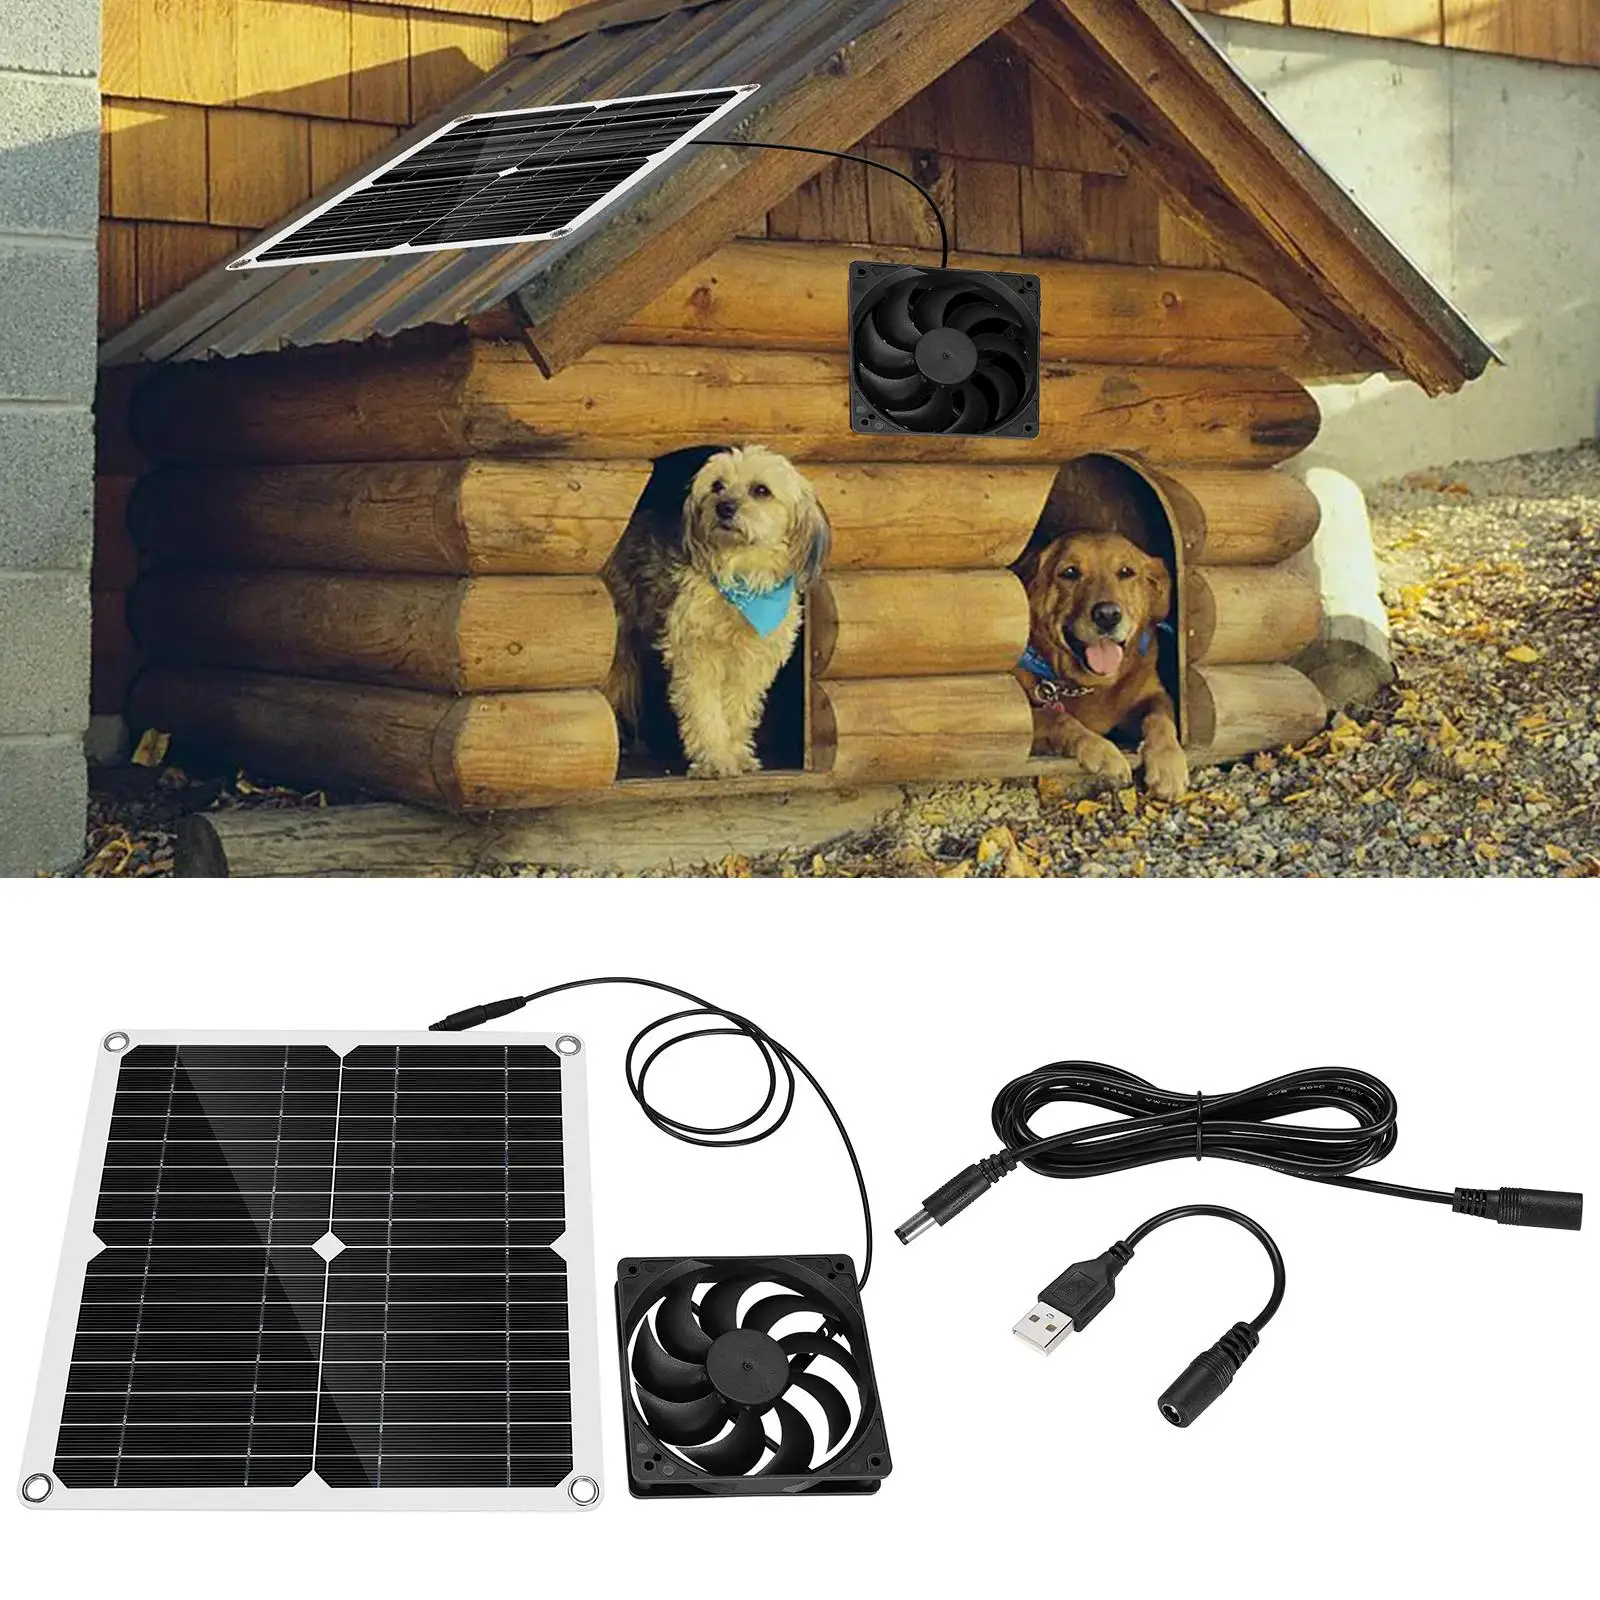 12W Solar Panel Exhaust Fan Outdoor Solar Powered Fan Waterproof Mini Ventilator for Greenhouse Dog Chicken House Home RV Office